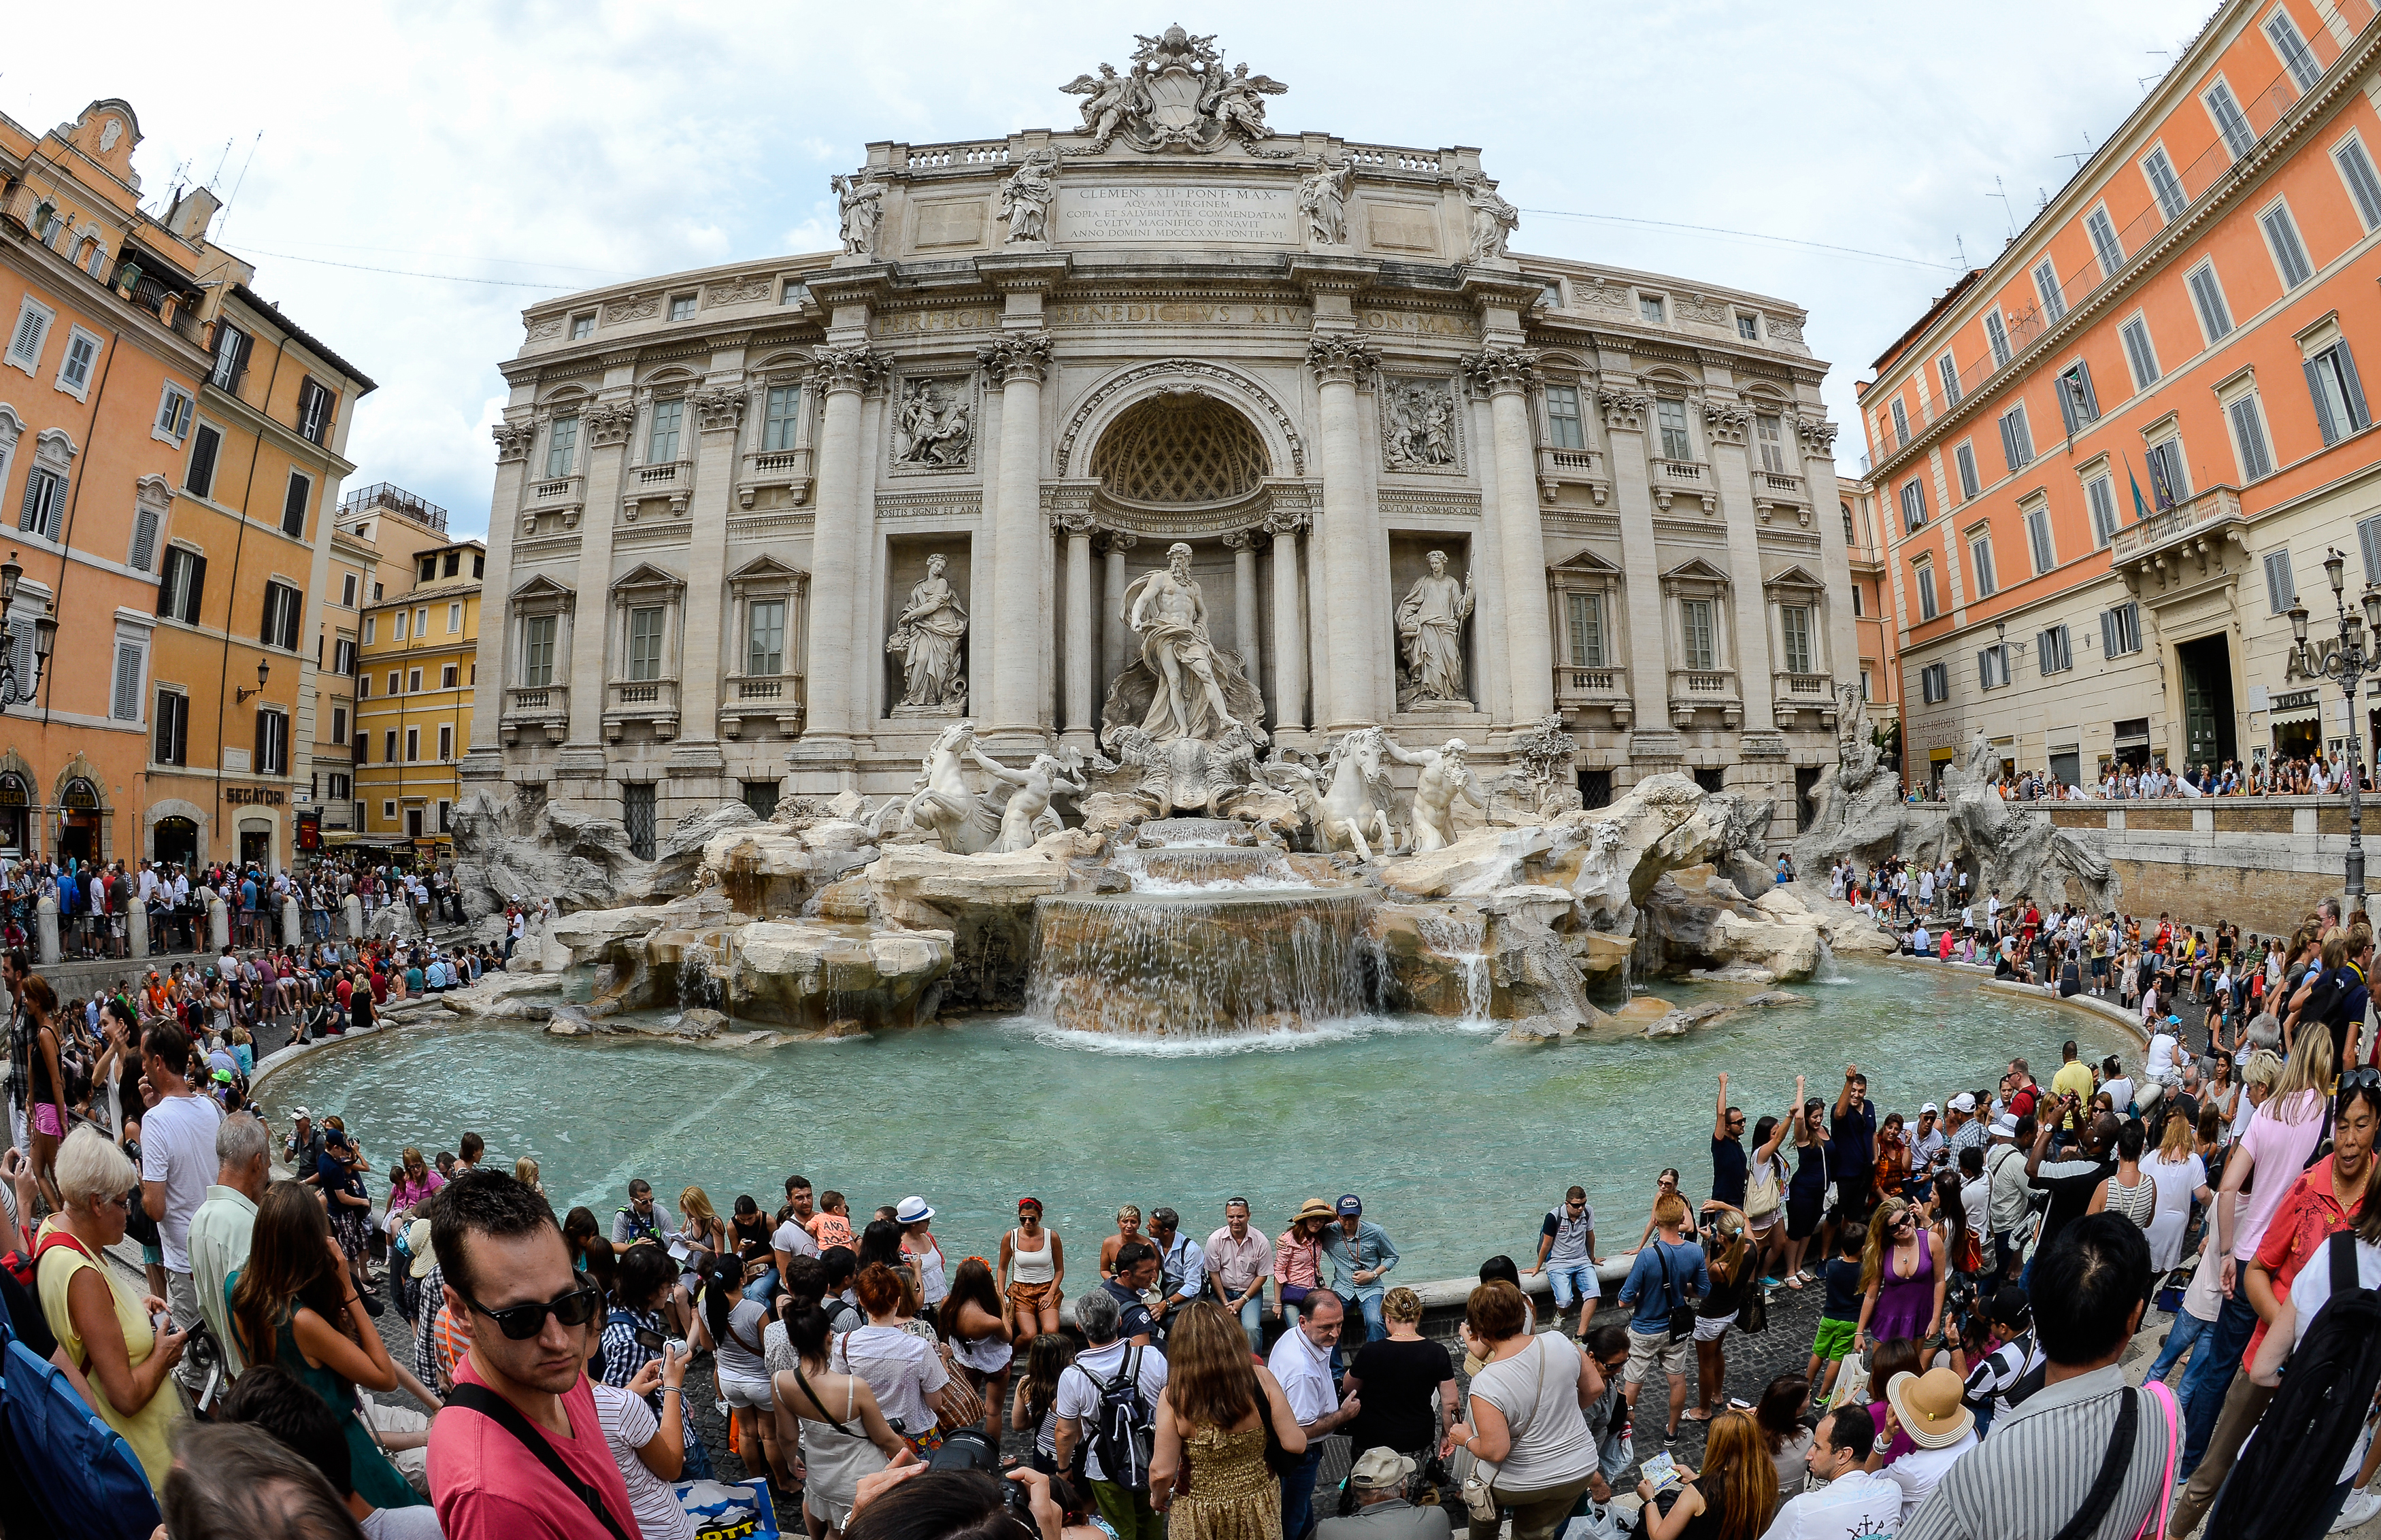 Le opere più belle del mondo&#8230;secondo noi: #1 Fontana di Trevi